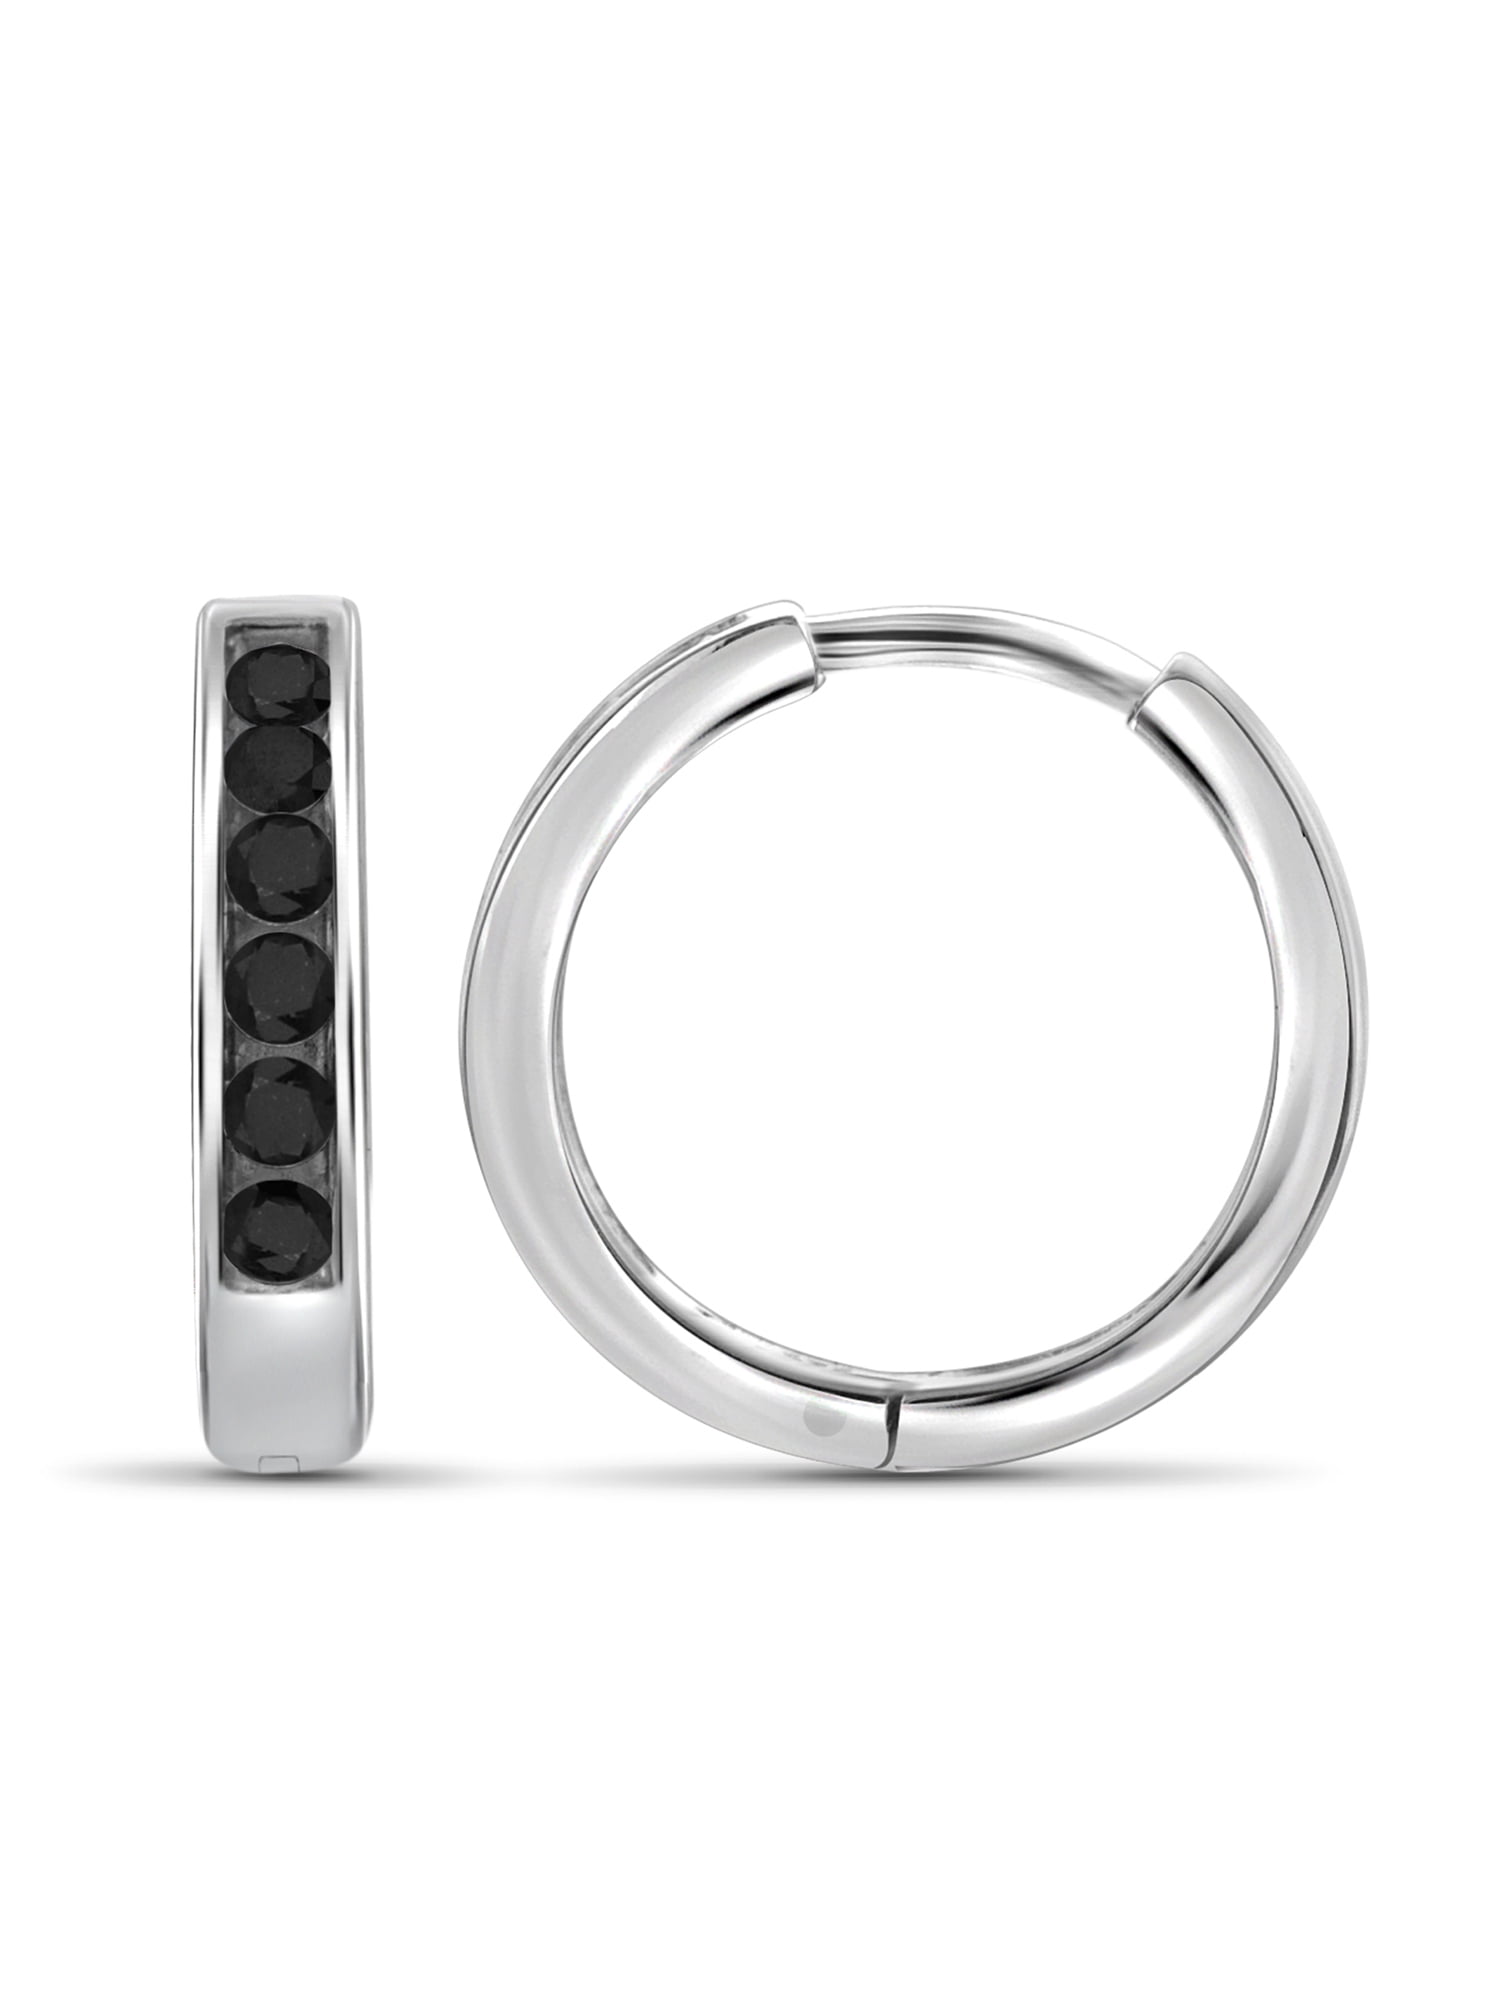 Sterling Silbver Enhanced Black and White Diamond Hoop Earrings 1/4 Carat ctw I2-I3